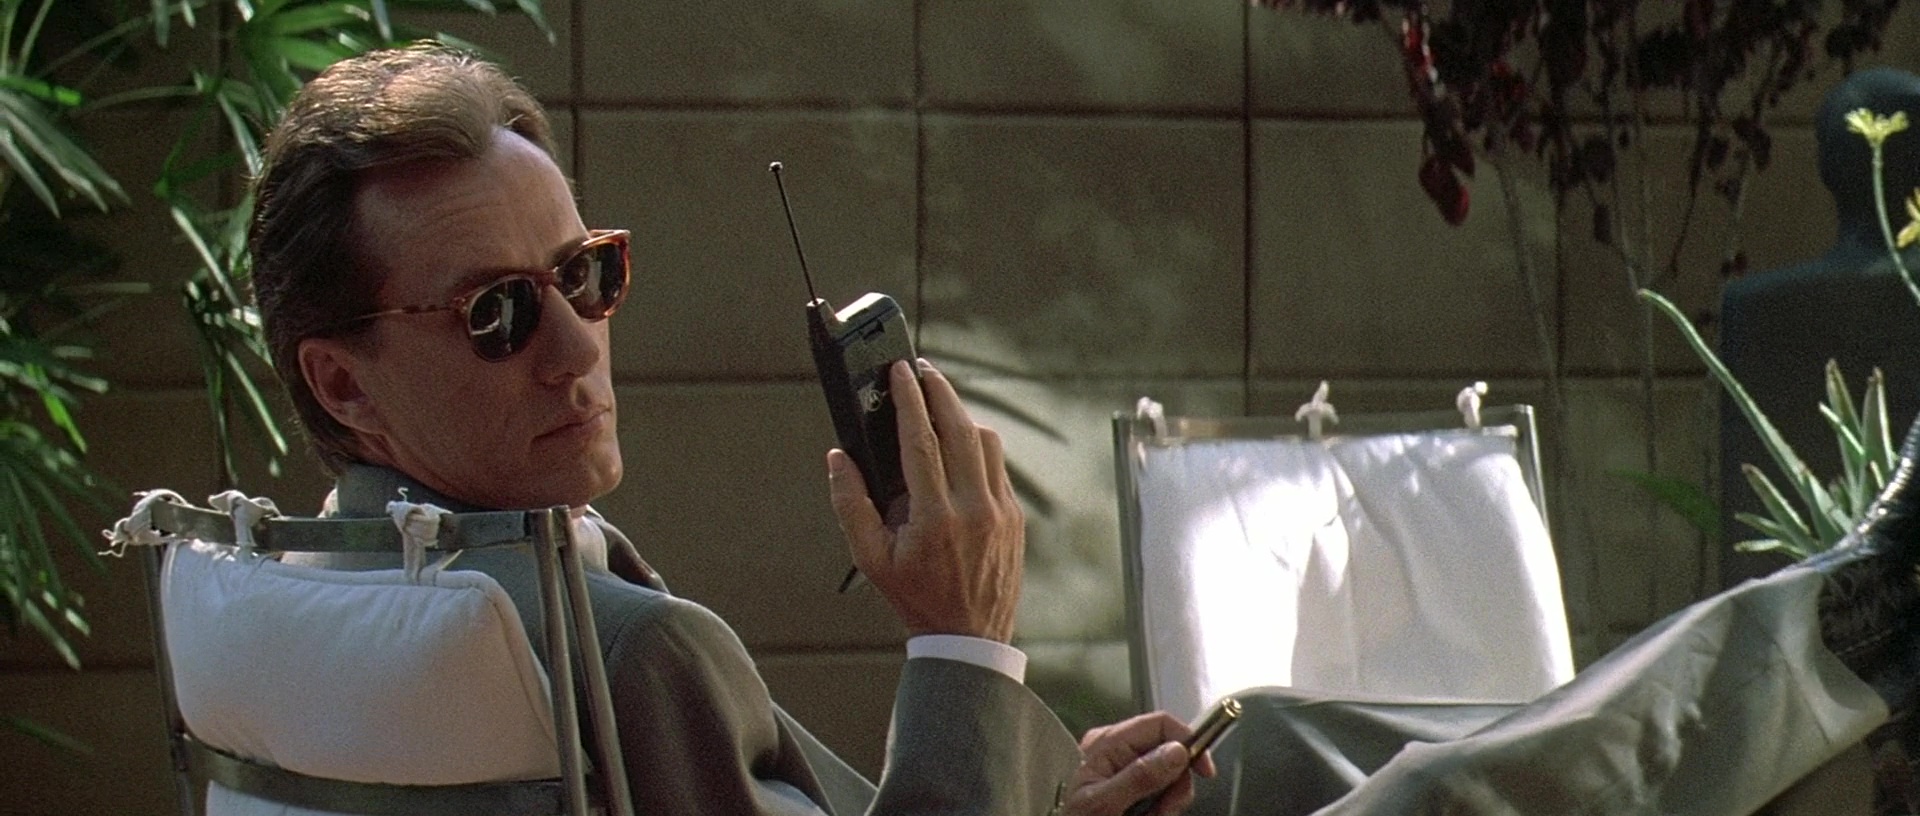 Motorola Mobile Phone Used by James Woods in The Getaway (1994) Movie